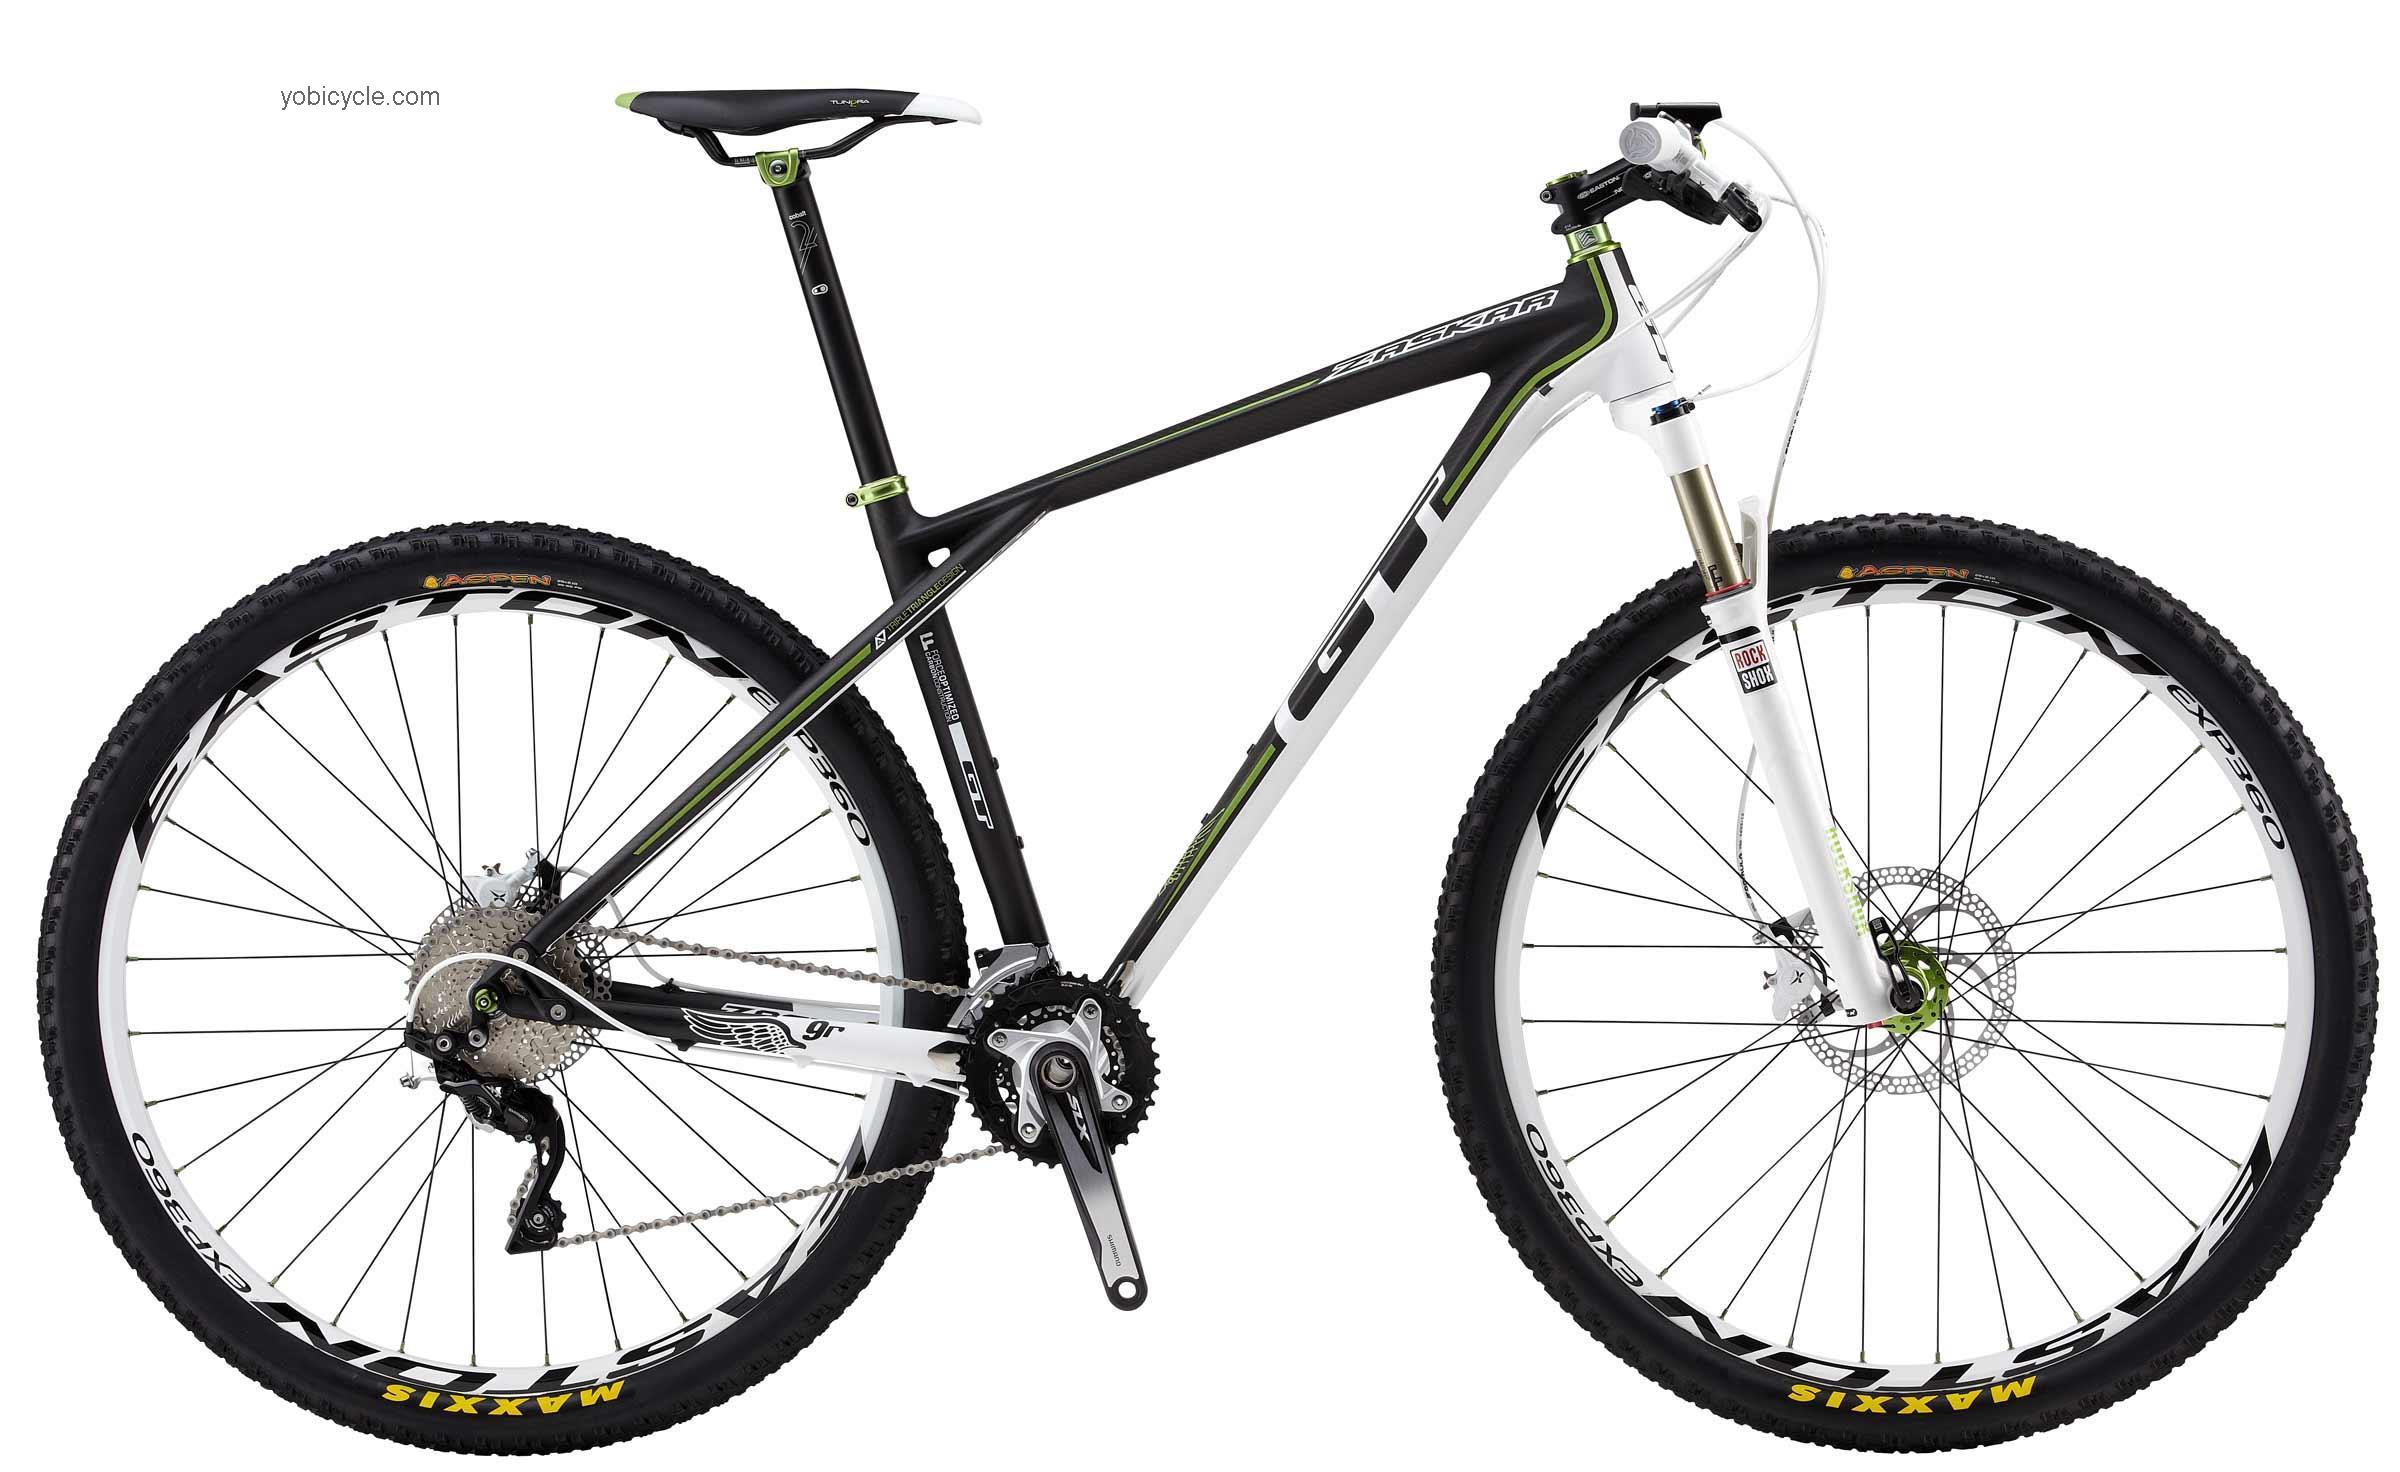 GT Bicycles Zaskar Carbon 9R Expert 2013 comparison online with competitors